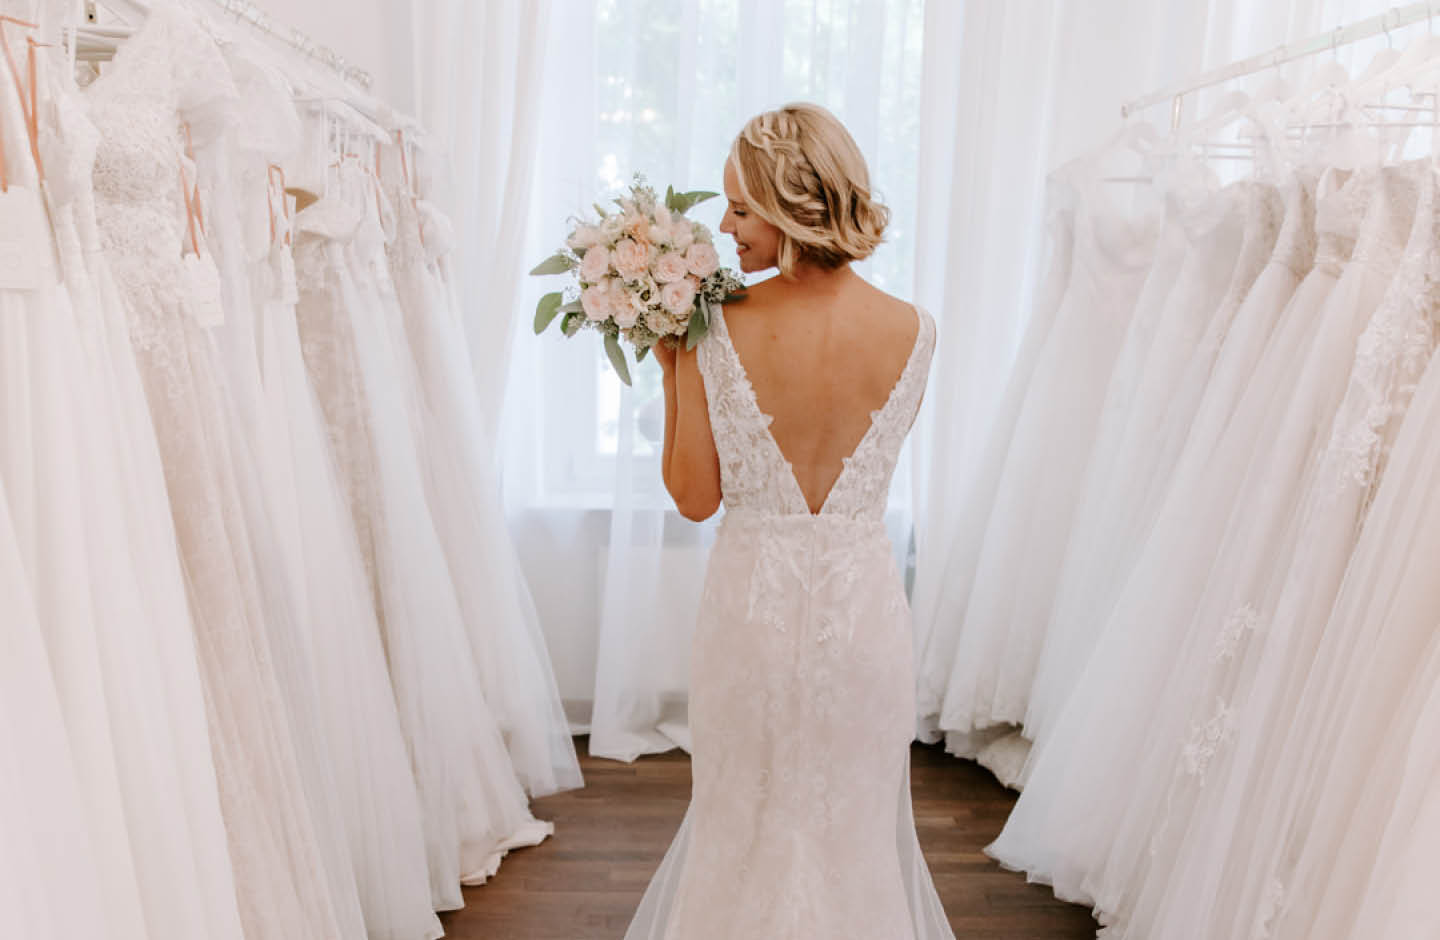 Frau mit Hochzeitskleid steht zwischen mehreren Hochzeitskleidern.